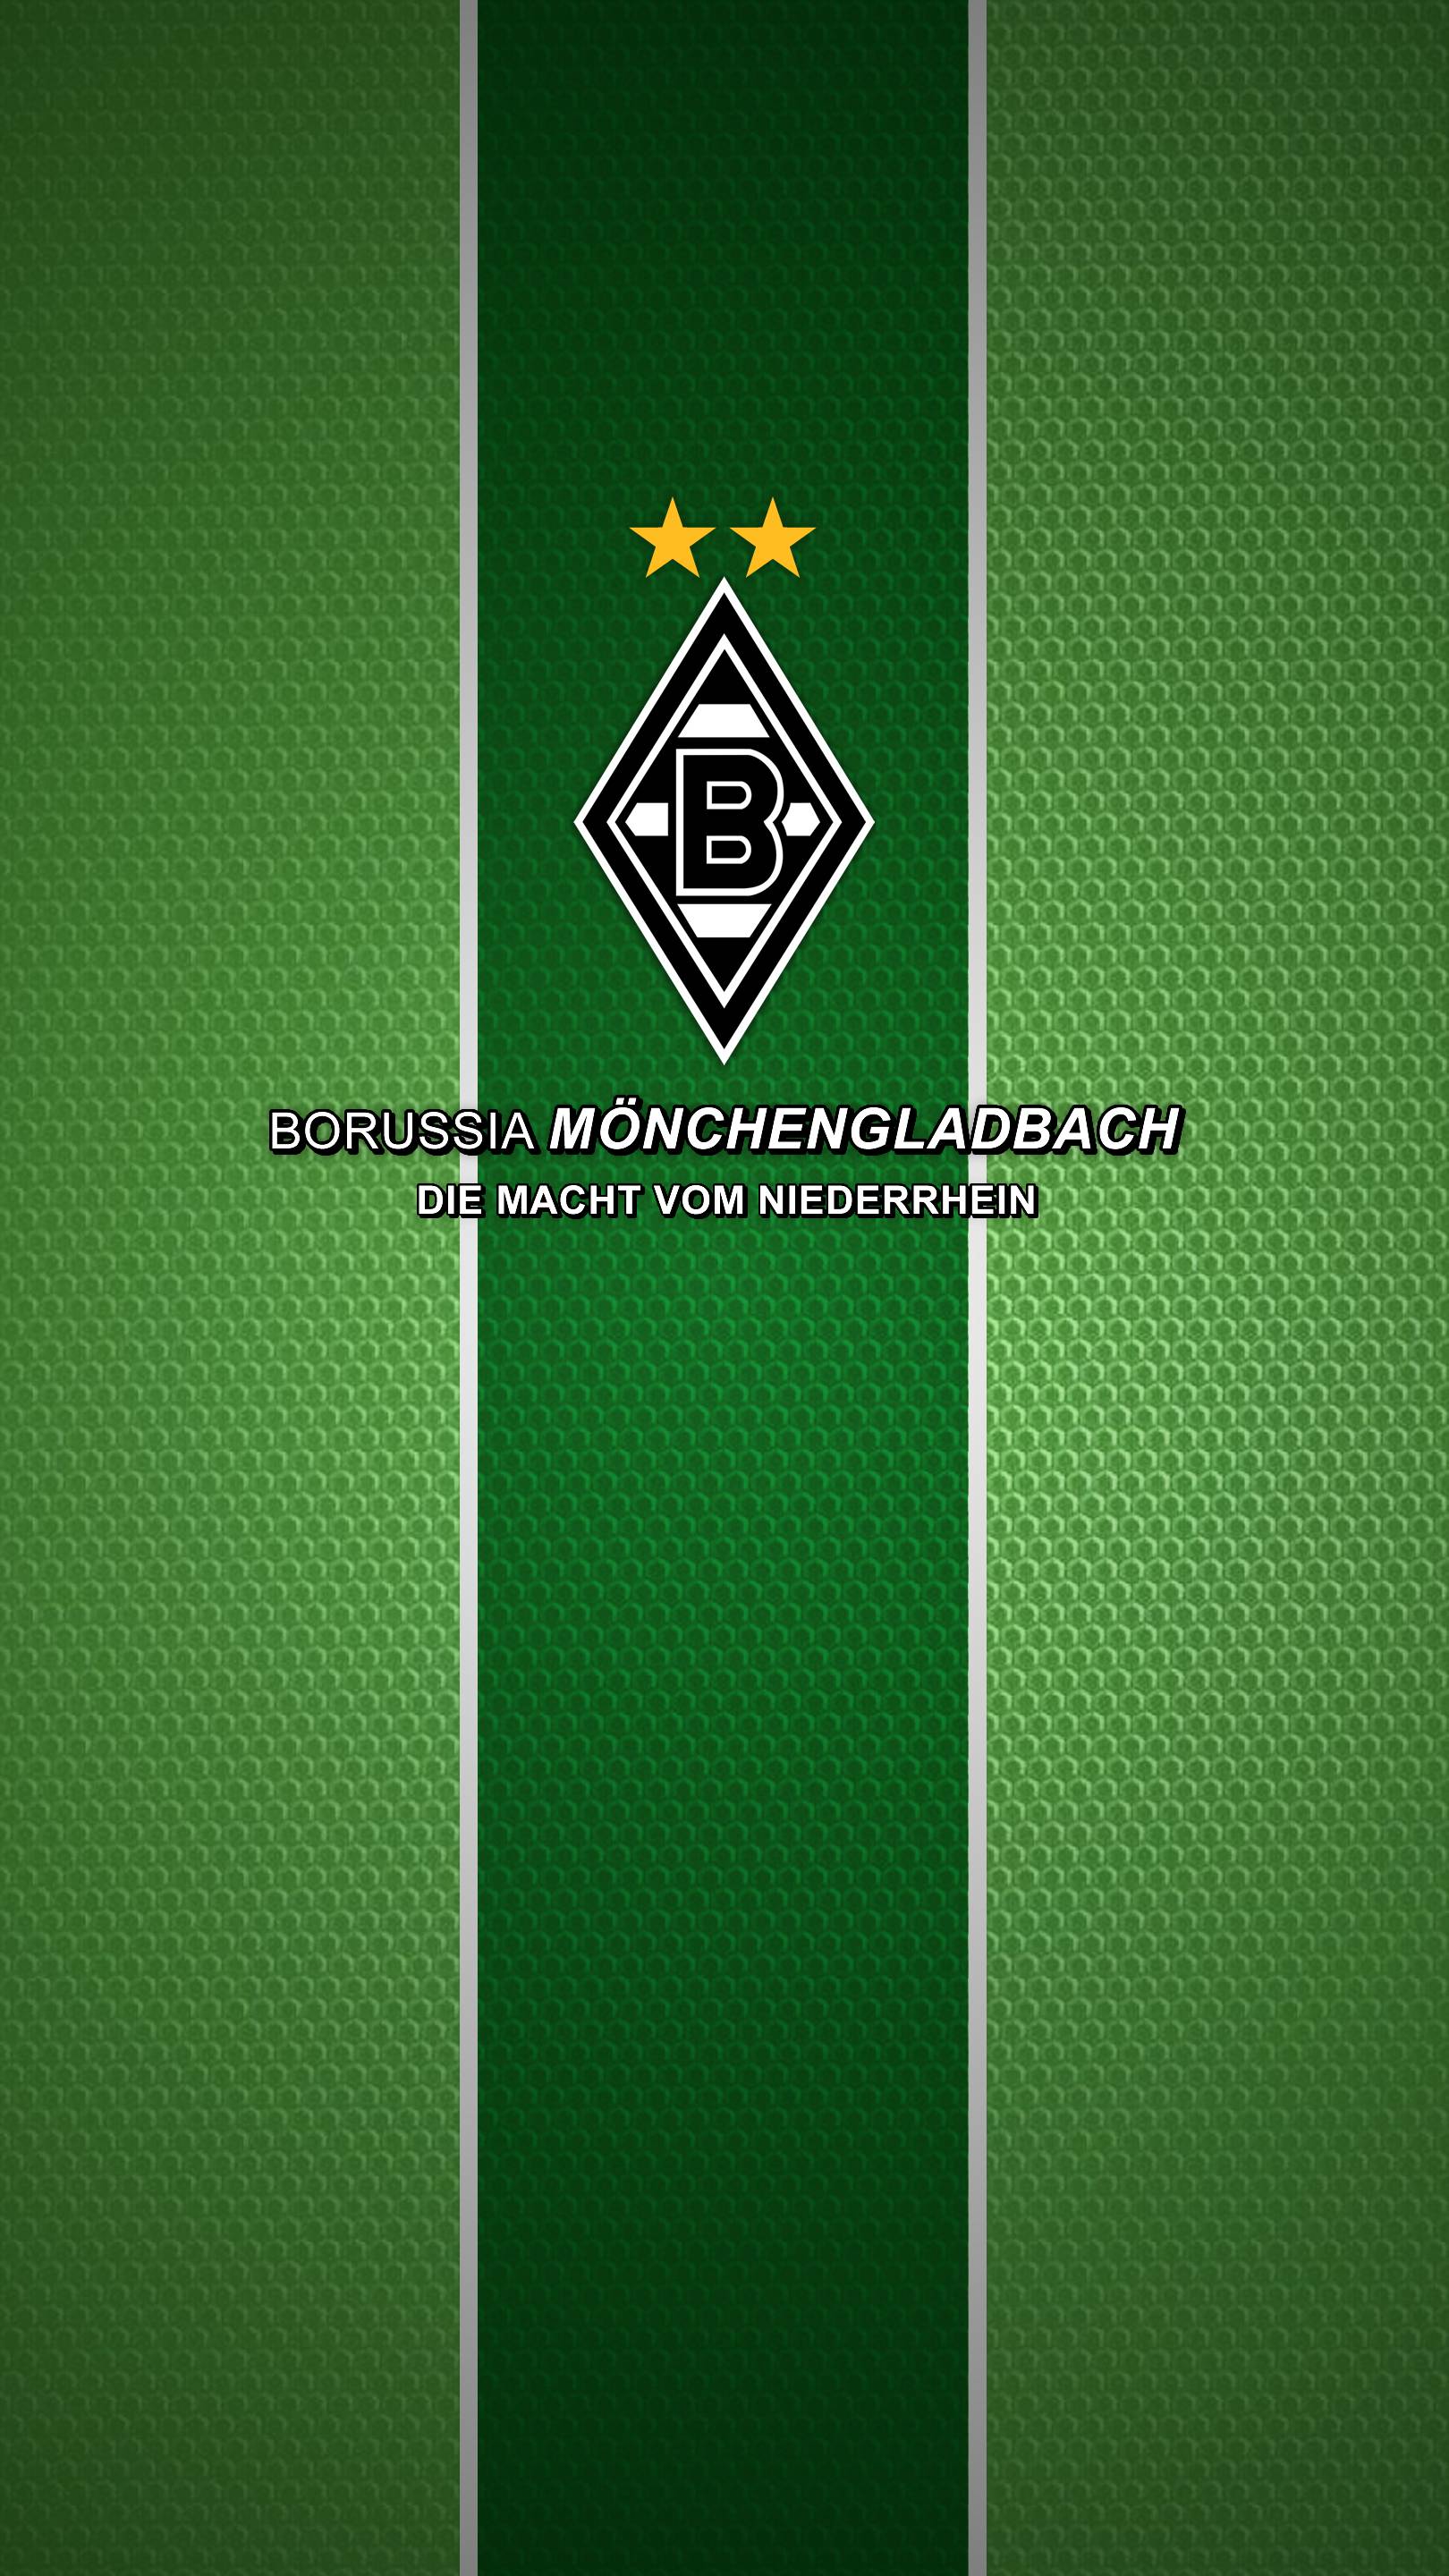 Mobile Borussia Monchengladbach Wallpaper. Full HD Picture